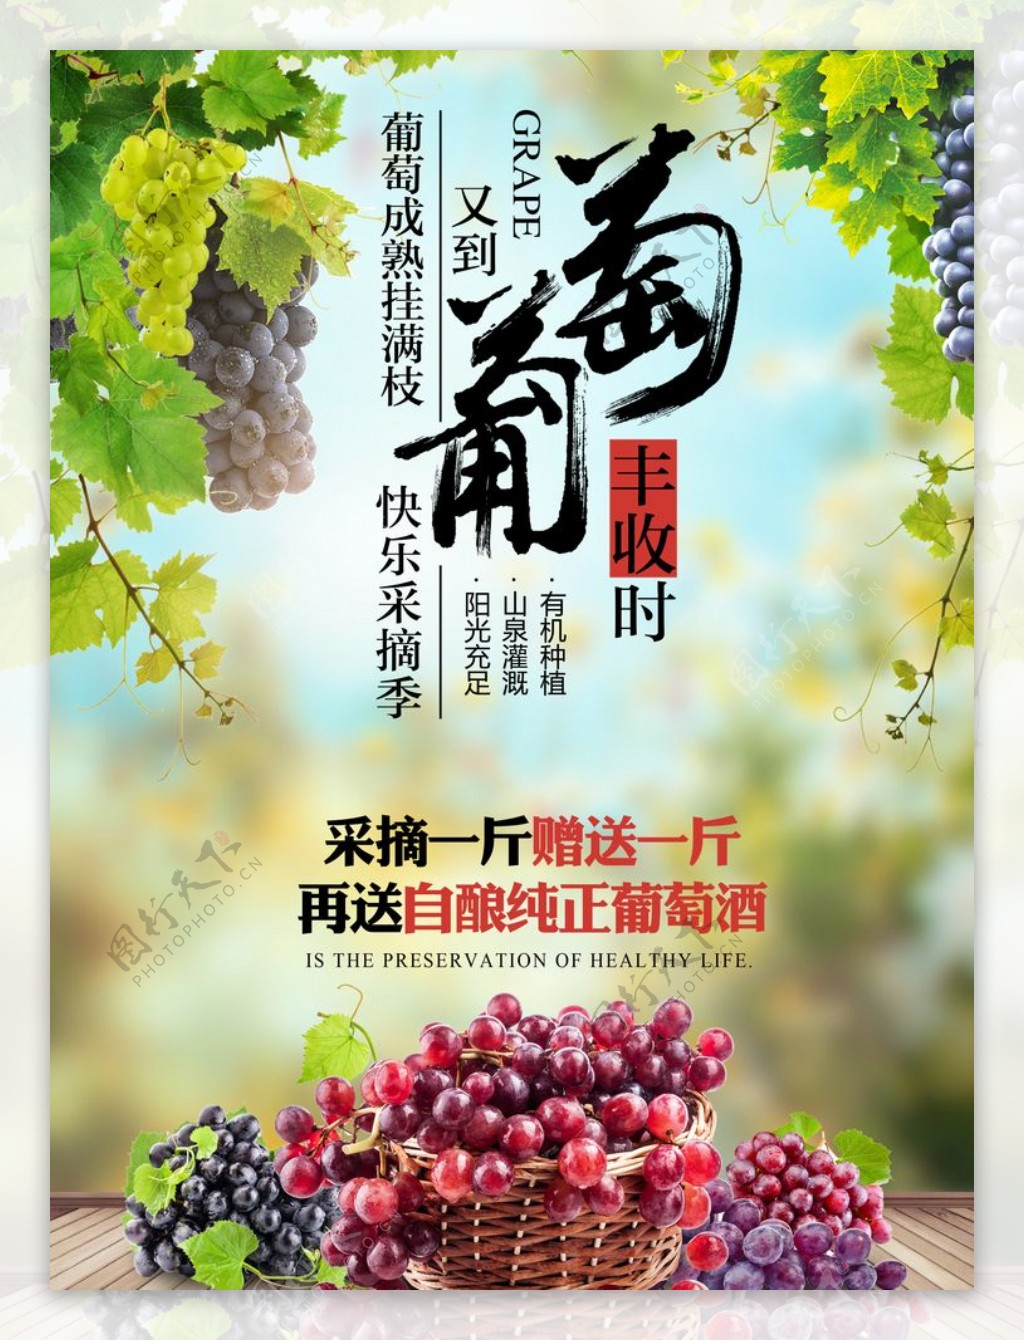 葡萄水果海报图片